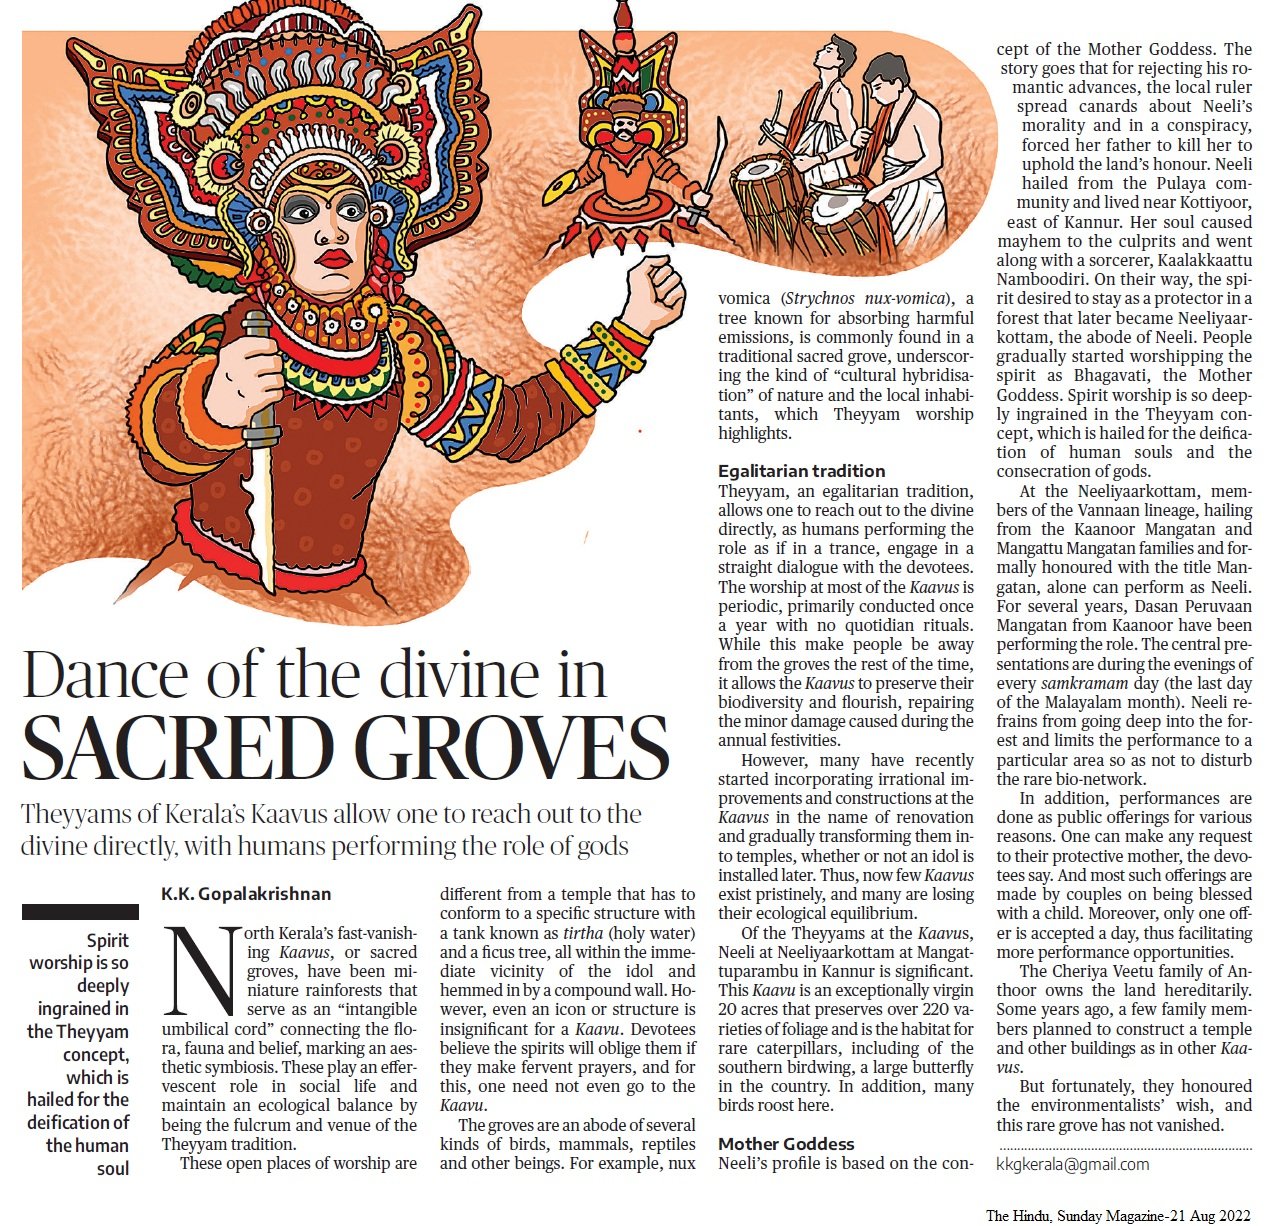 Dance of the divine in sacred groves - KK Gopalakrishnan